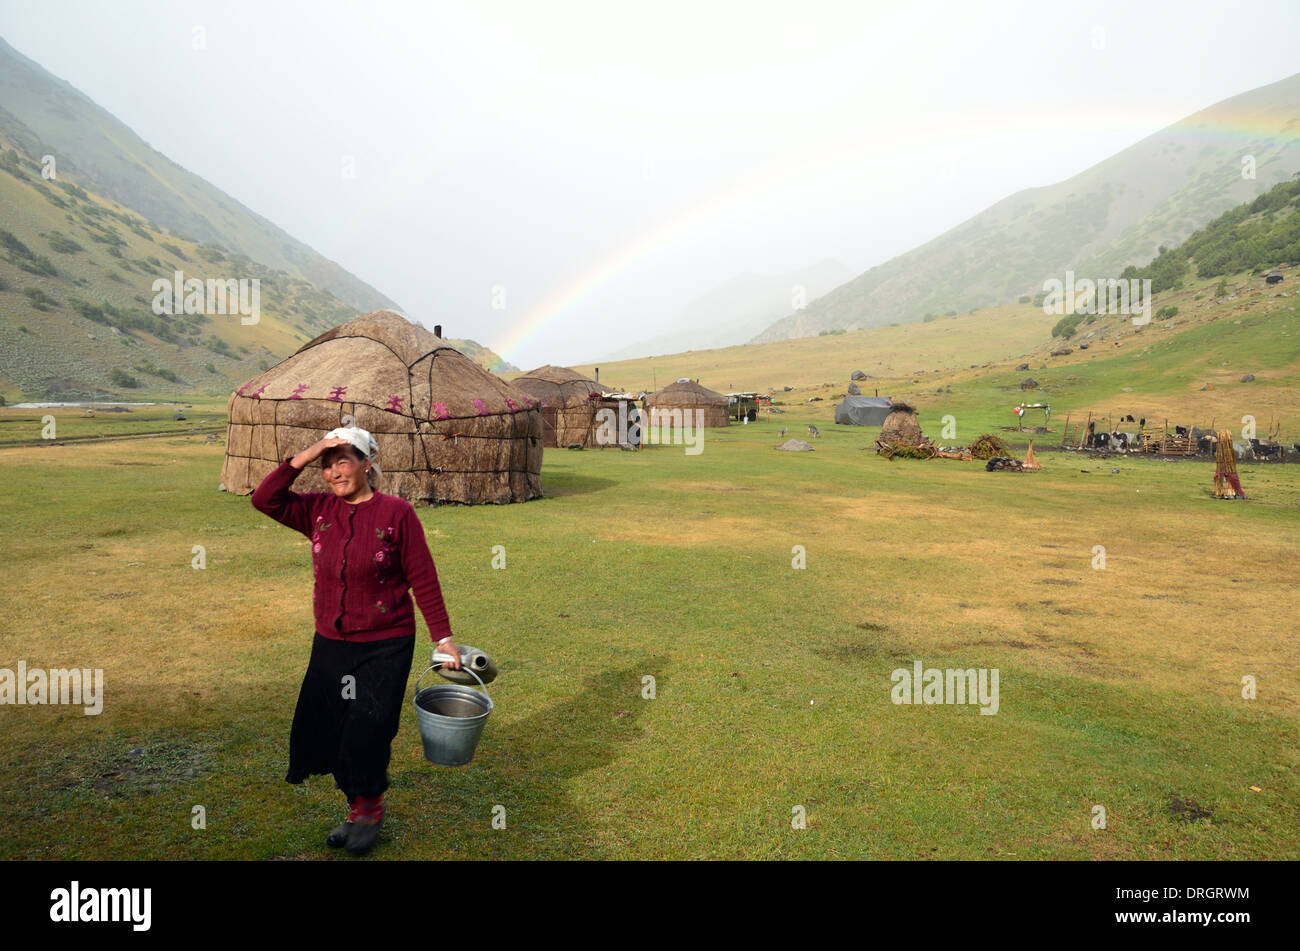 Yurts kirguís en las montañas del sur de Kirguistán Foto de stock